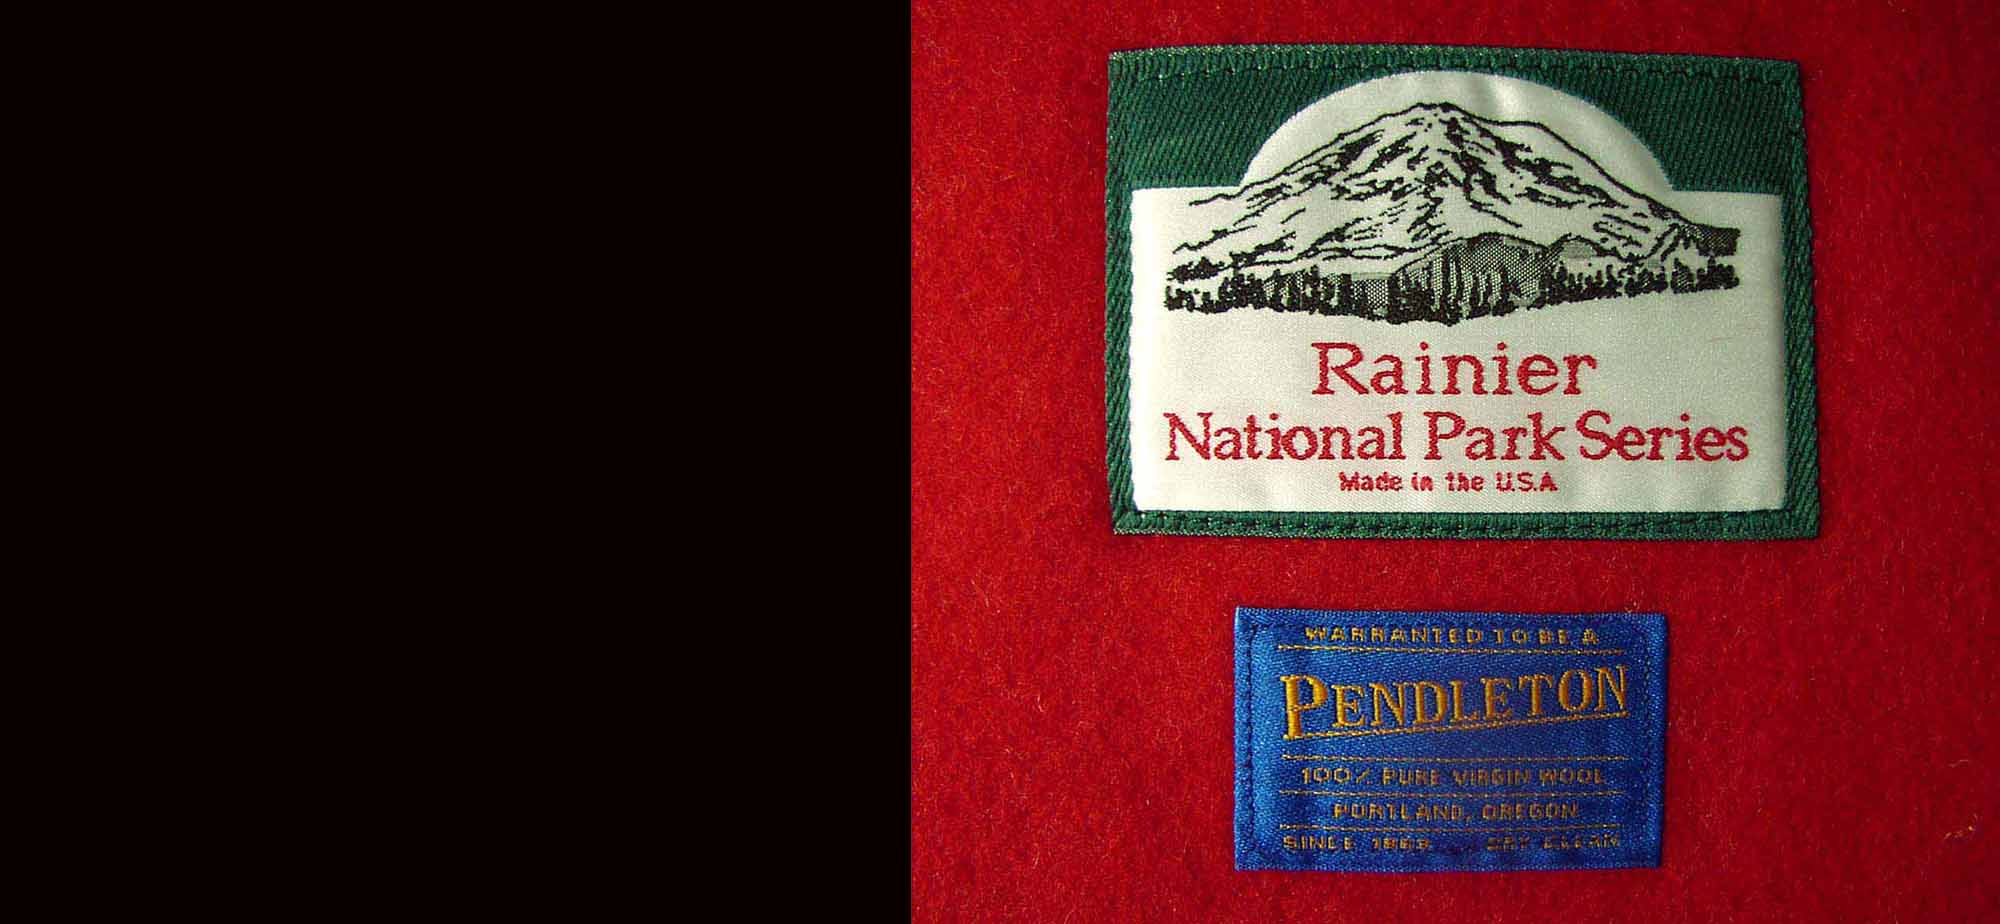 画像: ペンドルトン ナショナルパーク ブランケット・レー二ア国立公園/Pendleton National Park Blankets(Rainer)